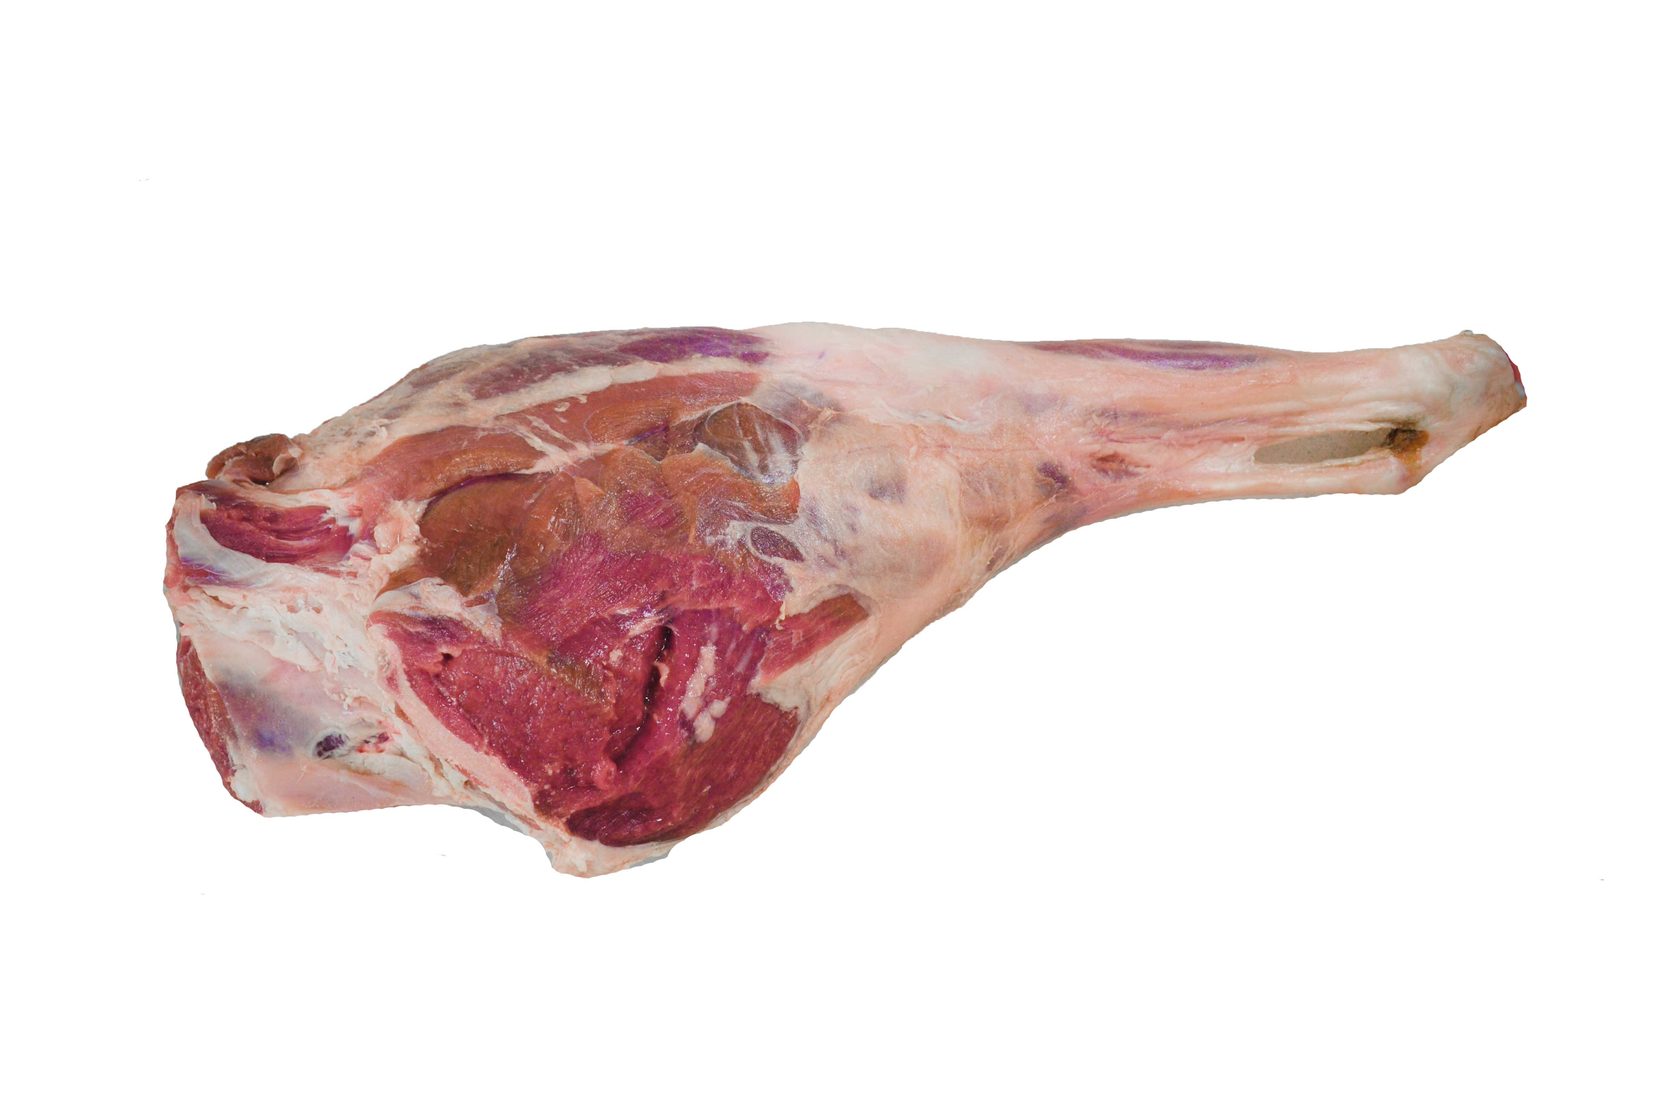 мясо говядина лопатка фото